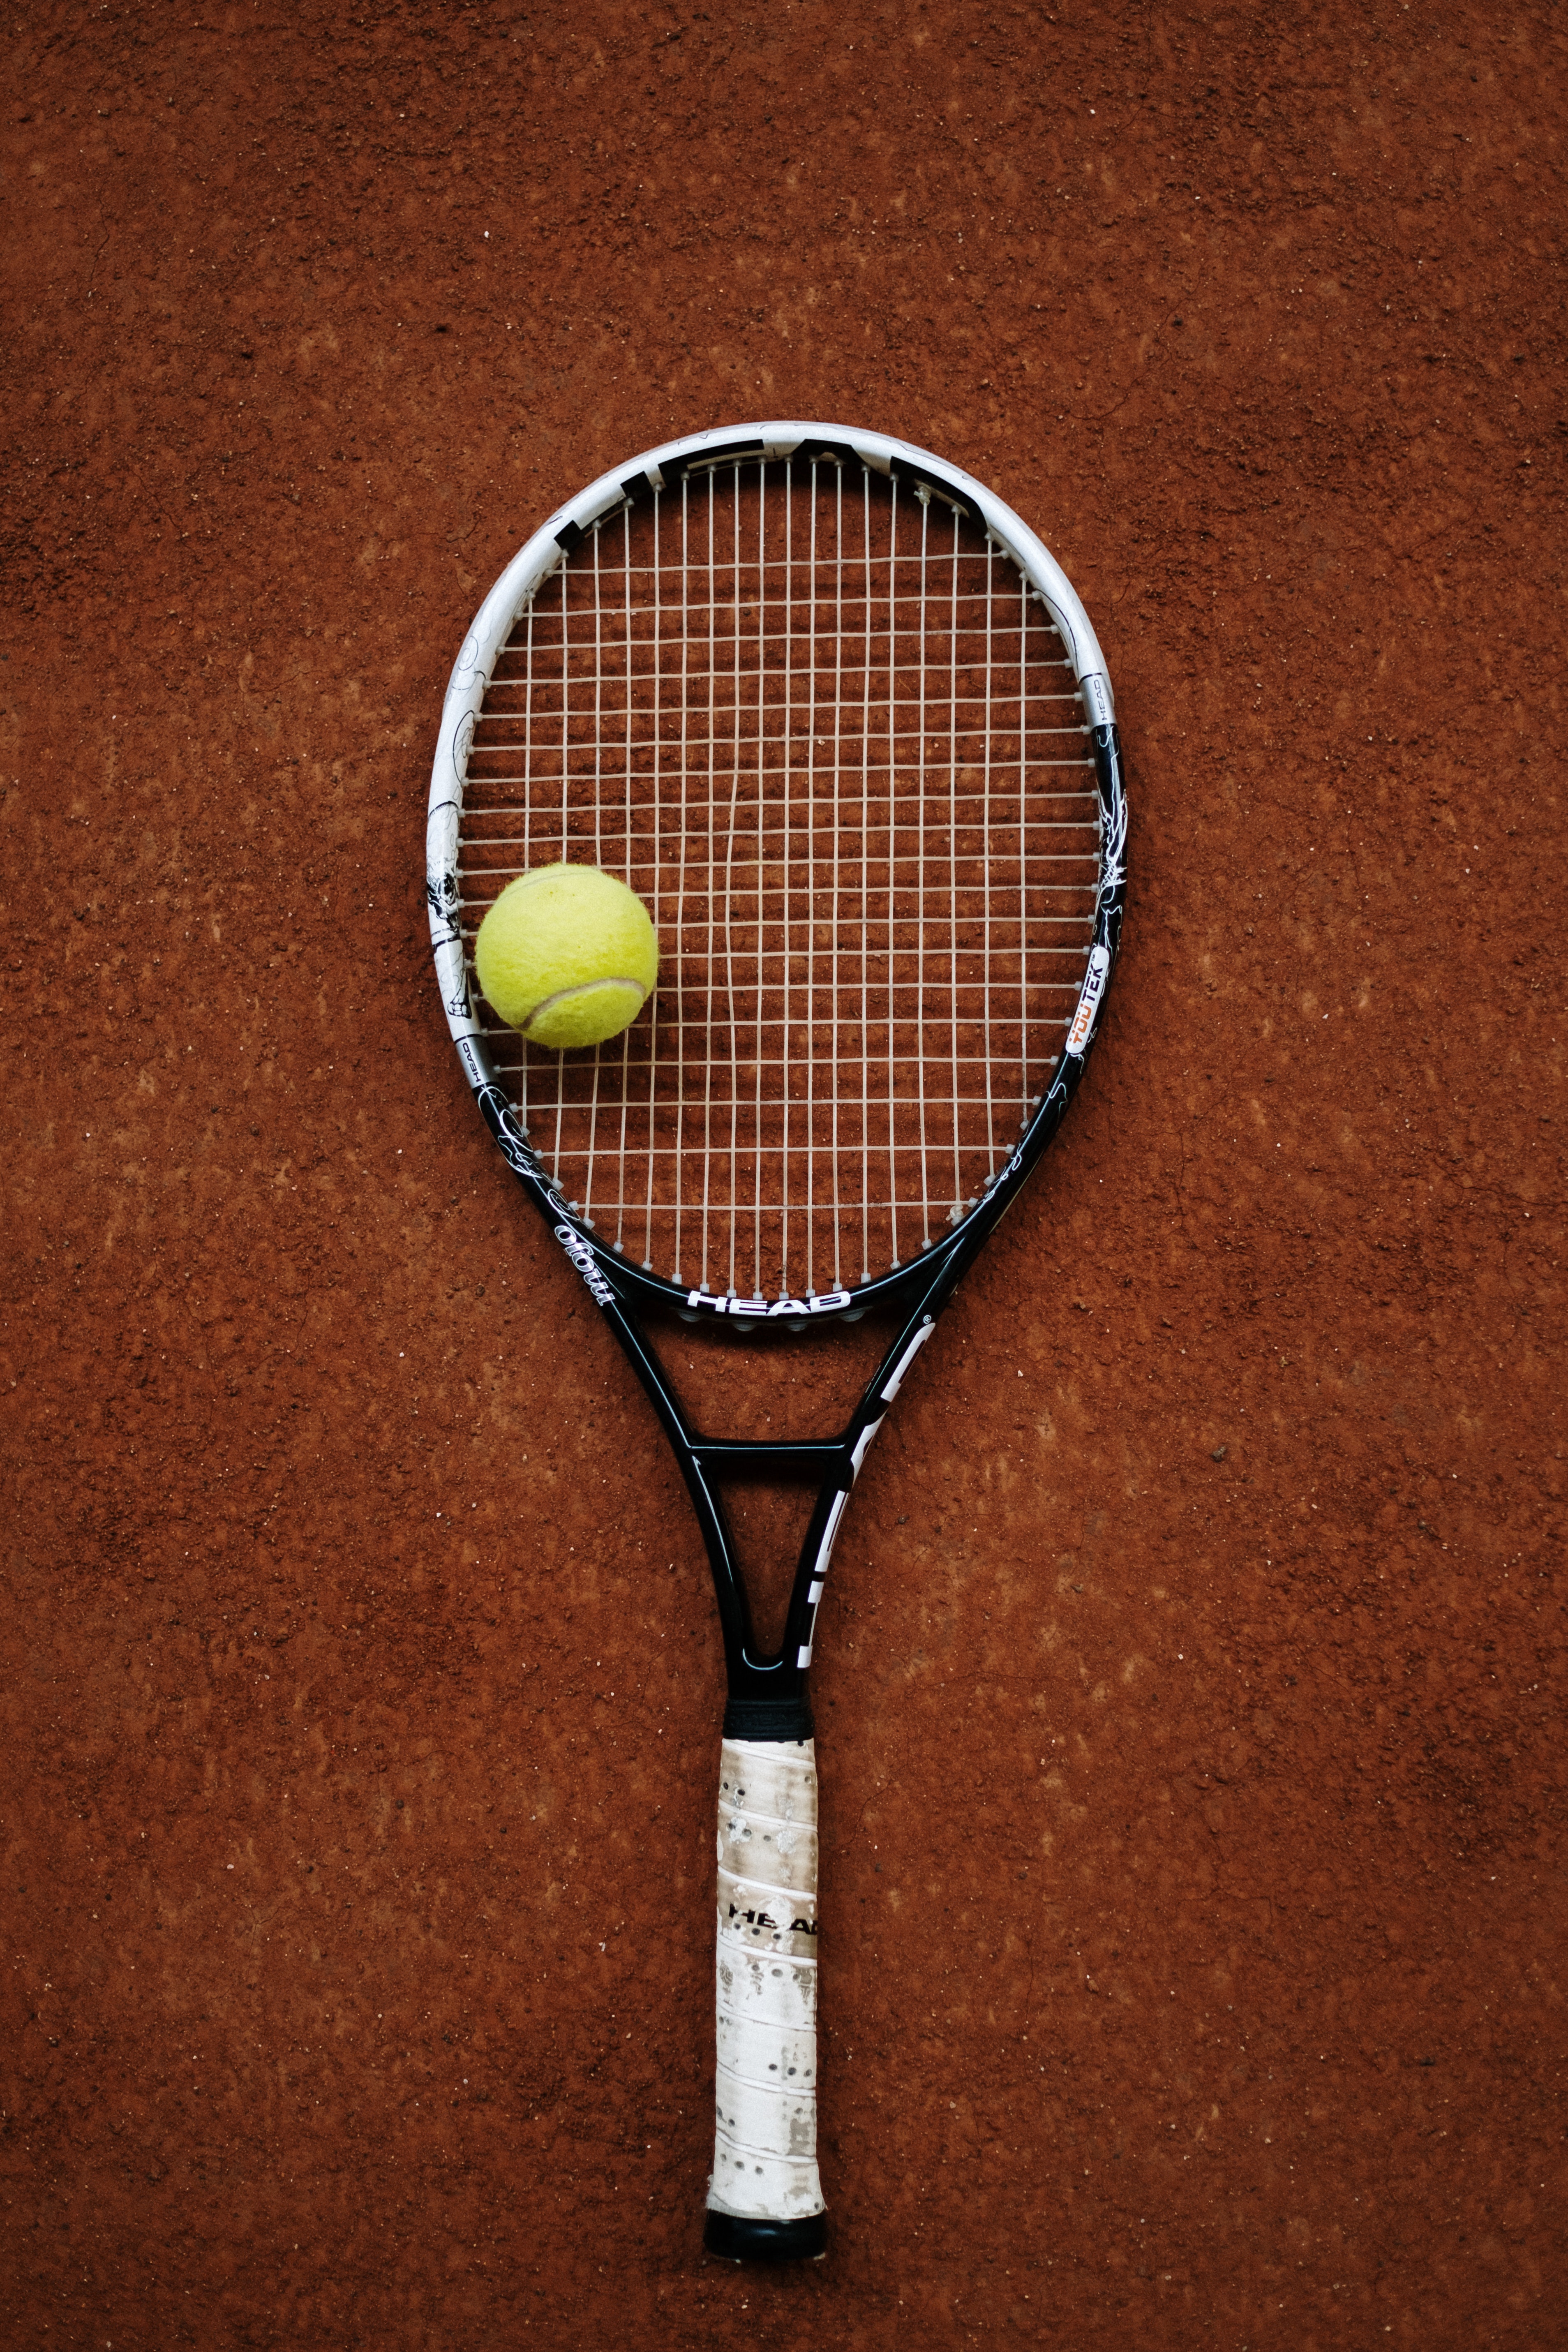 Raqueta de tenis posada sobre tierra batida con una pelota encima